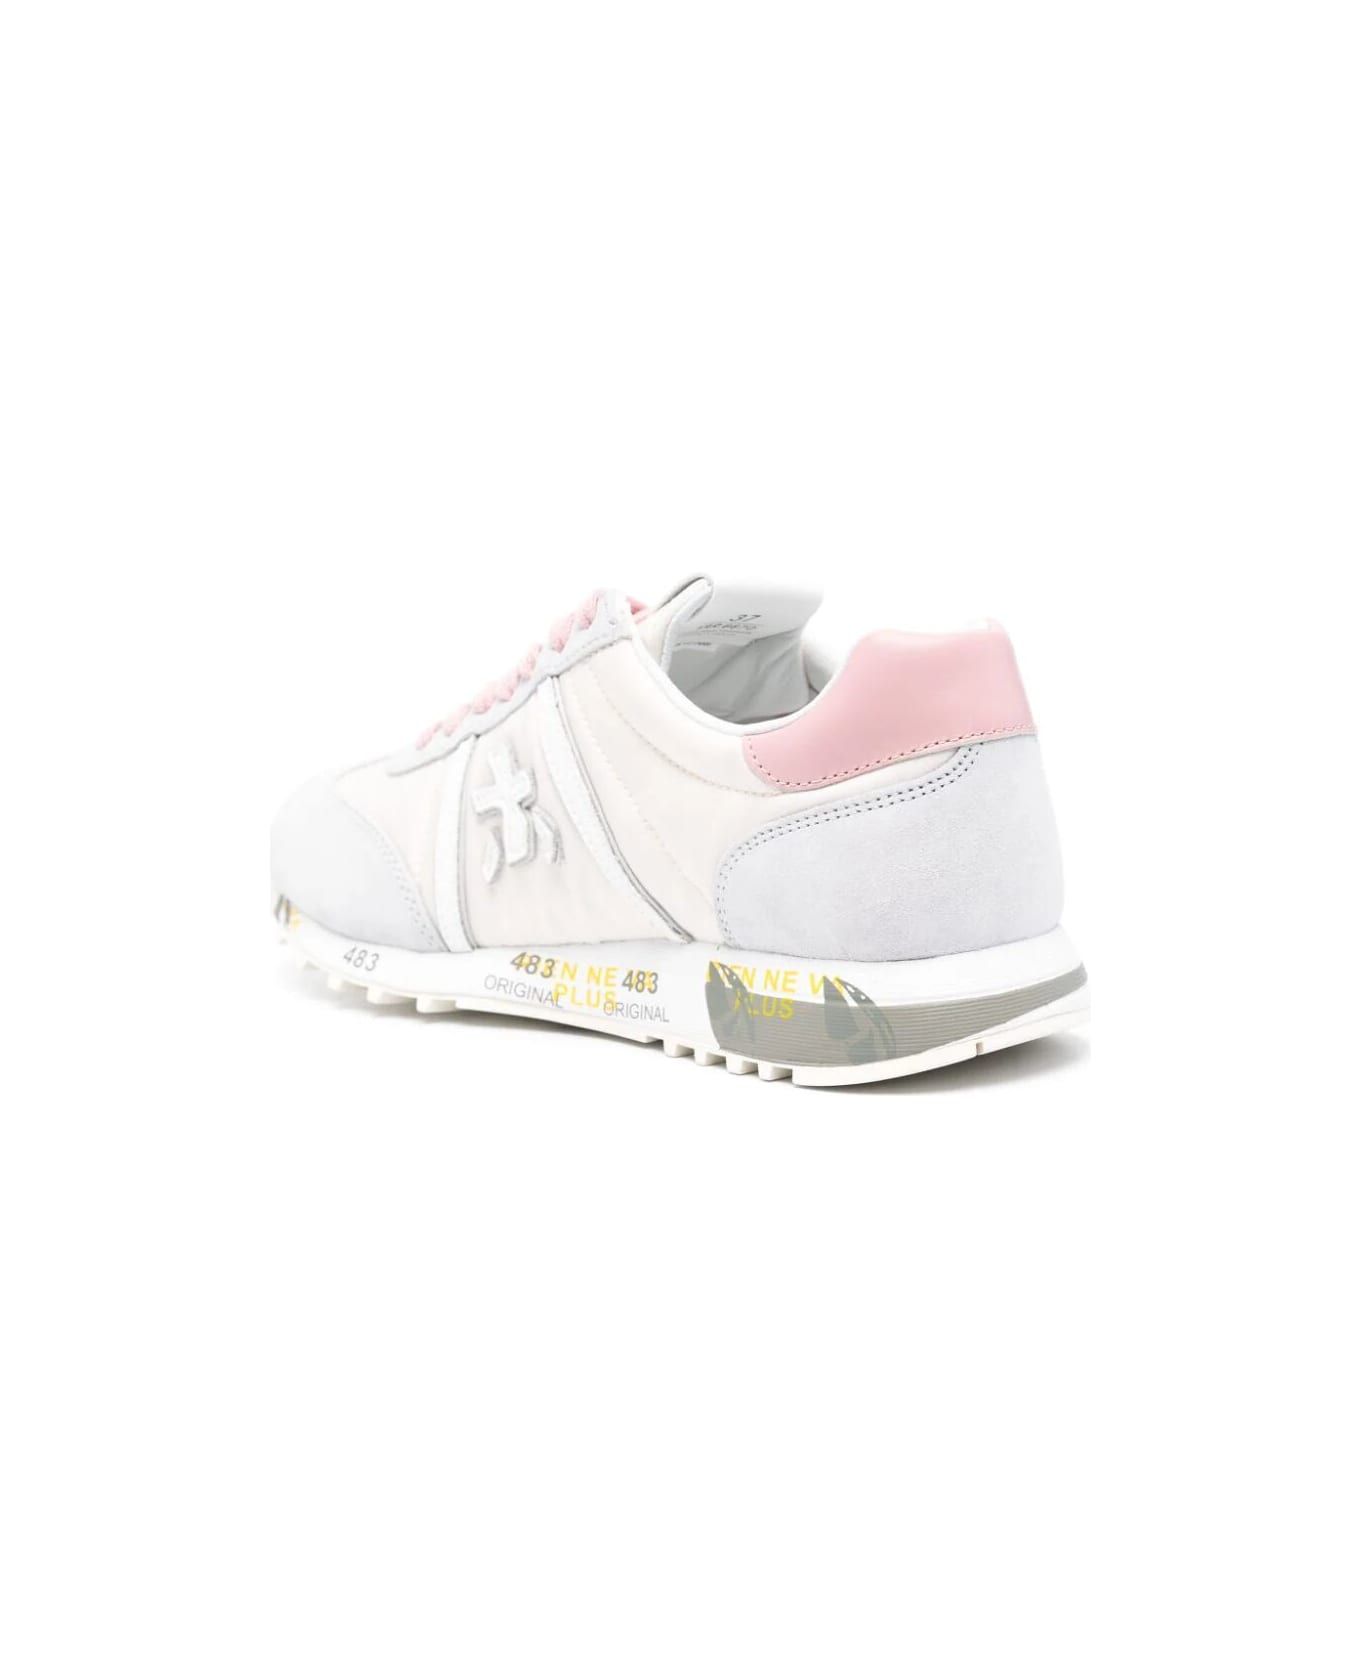 Premiata Lucyd Bi Material Sneakers - Pink スニーカー